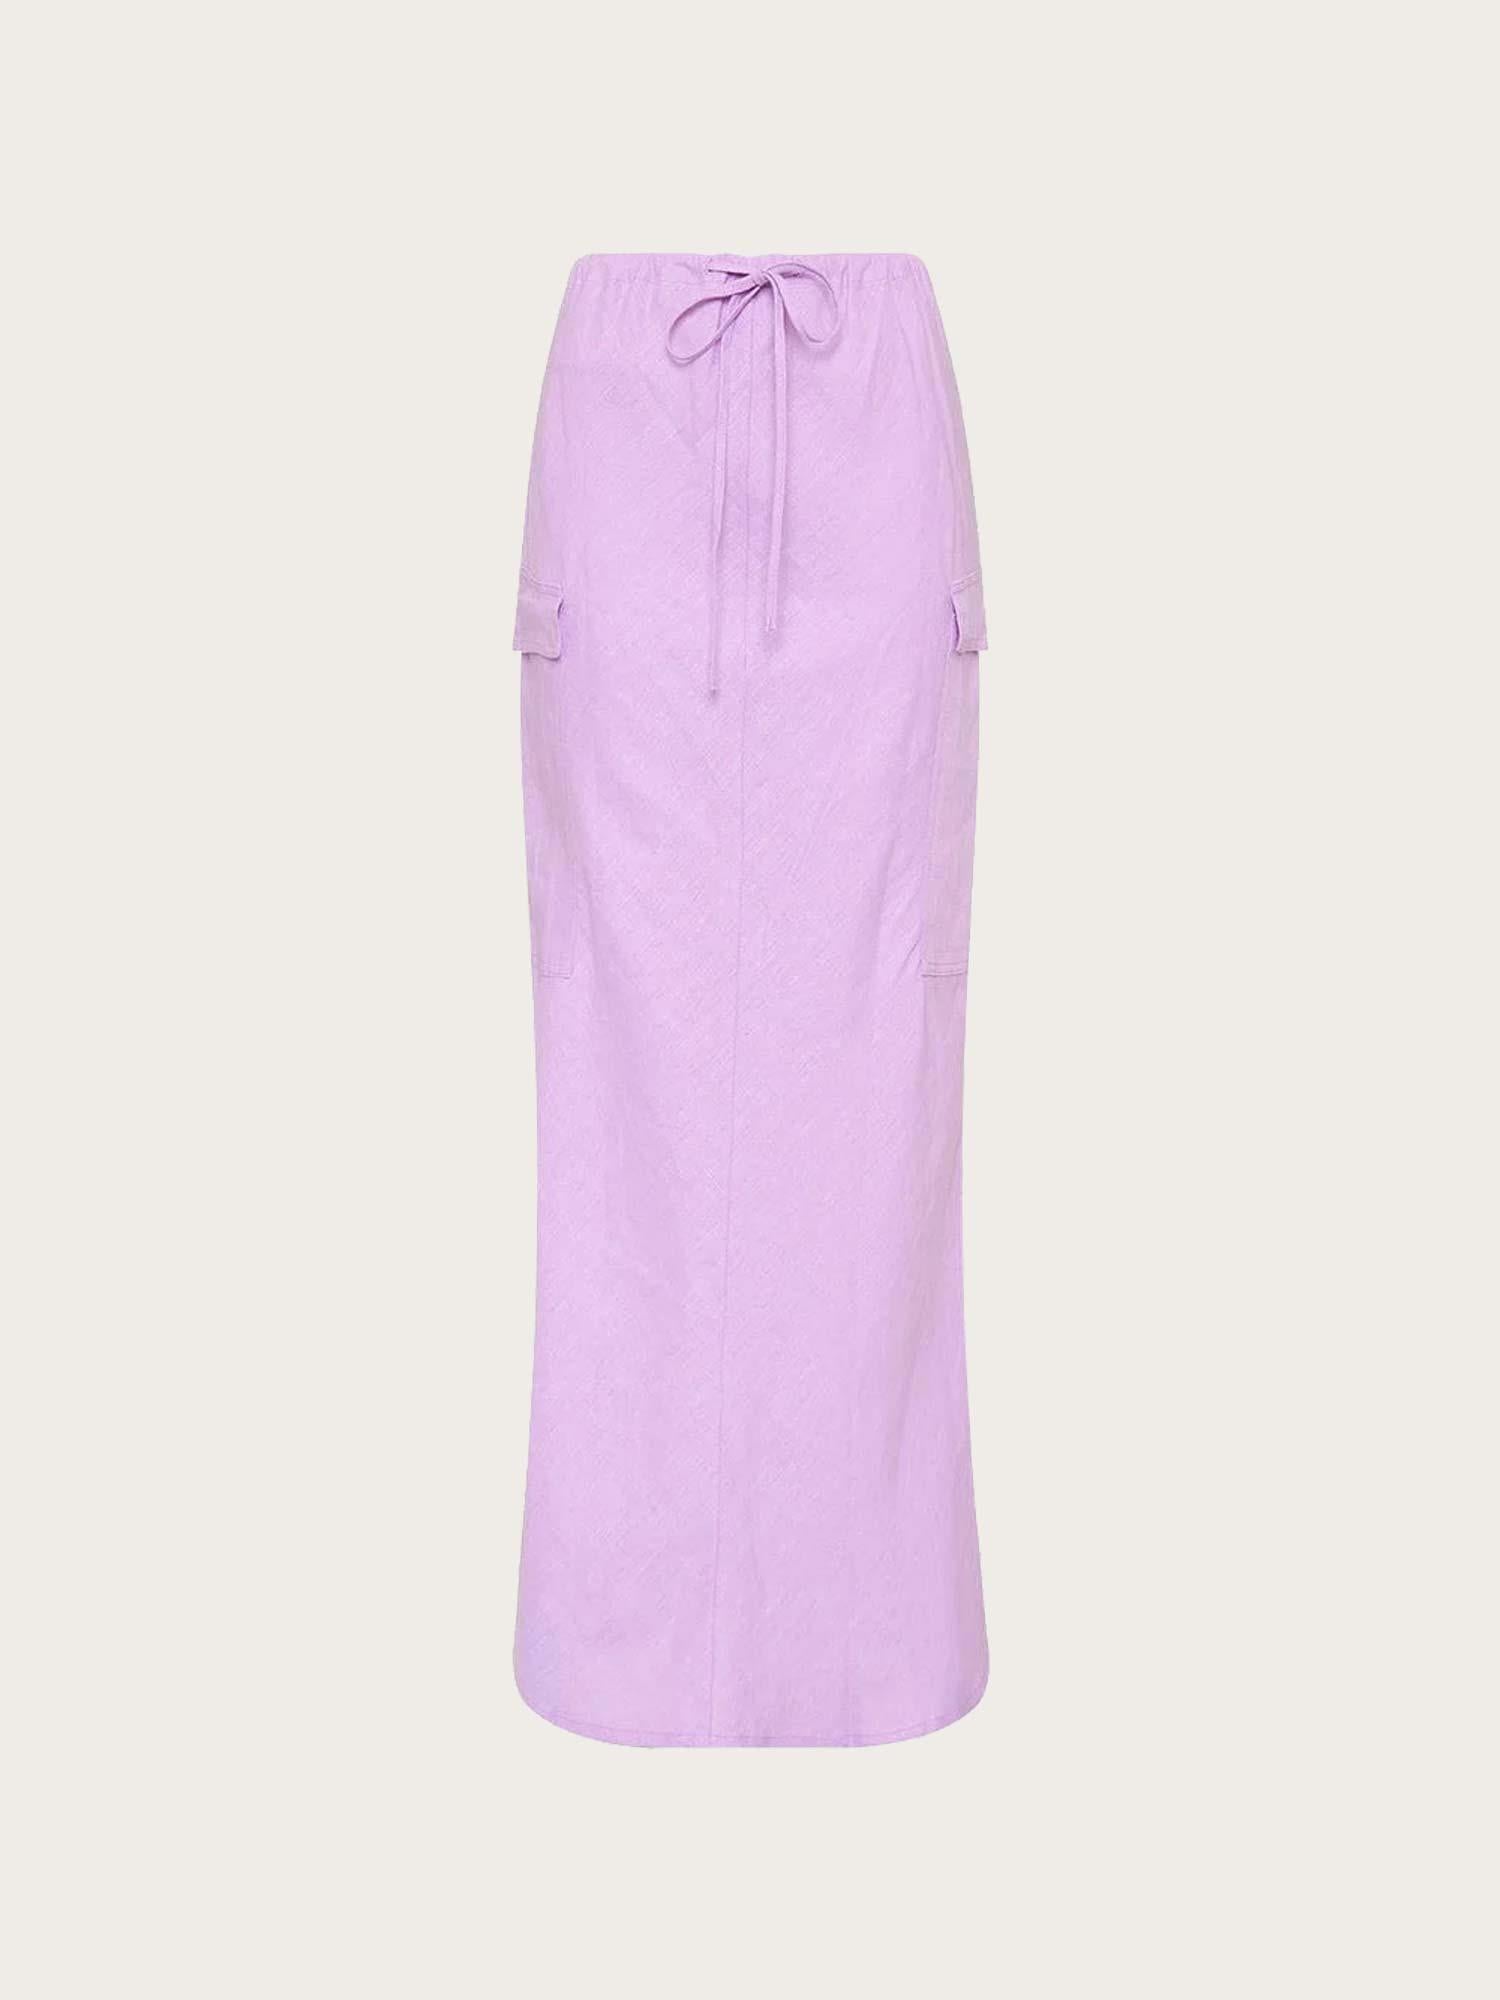 Katala Skirt - Lilac